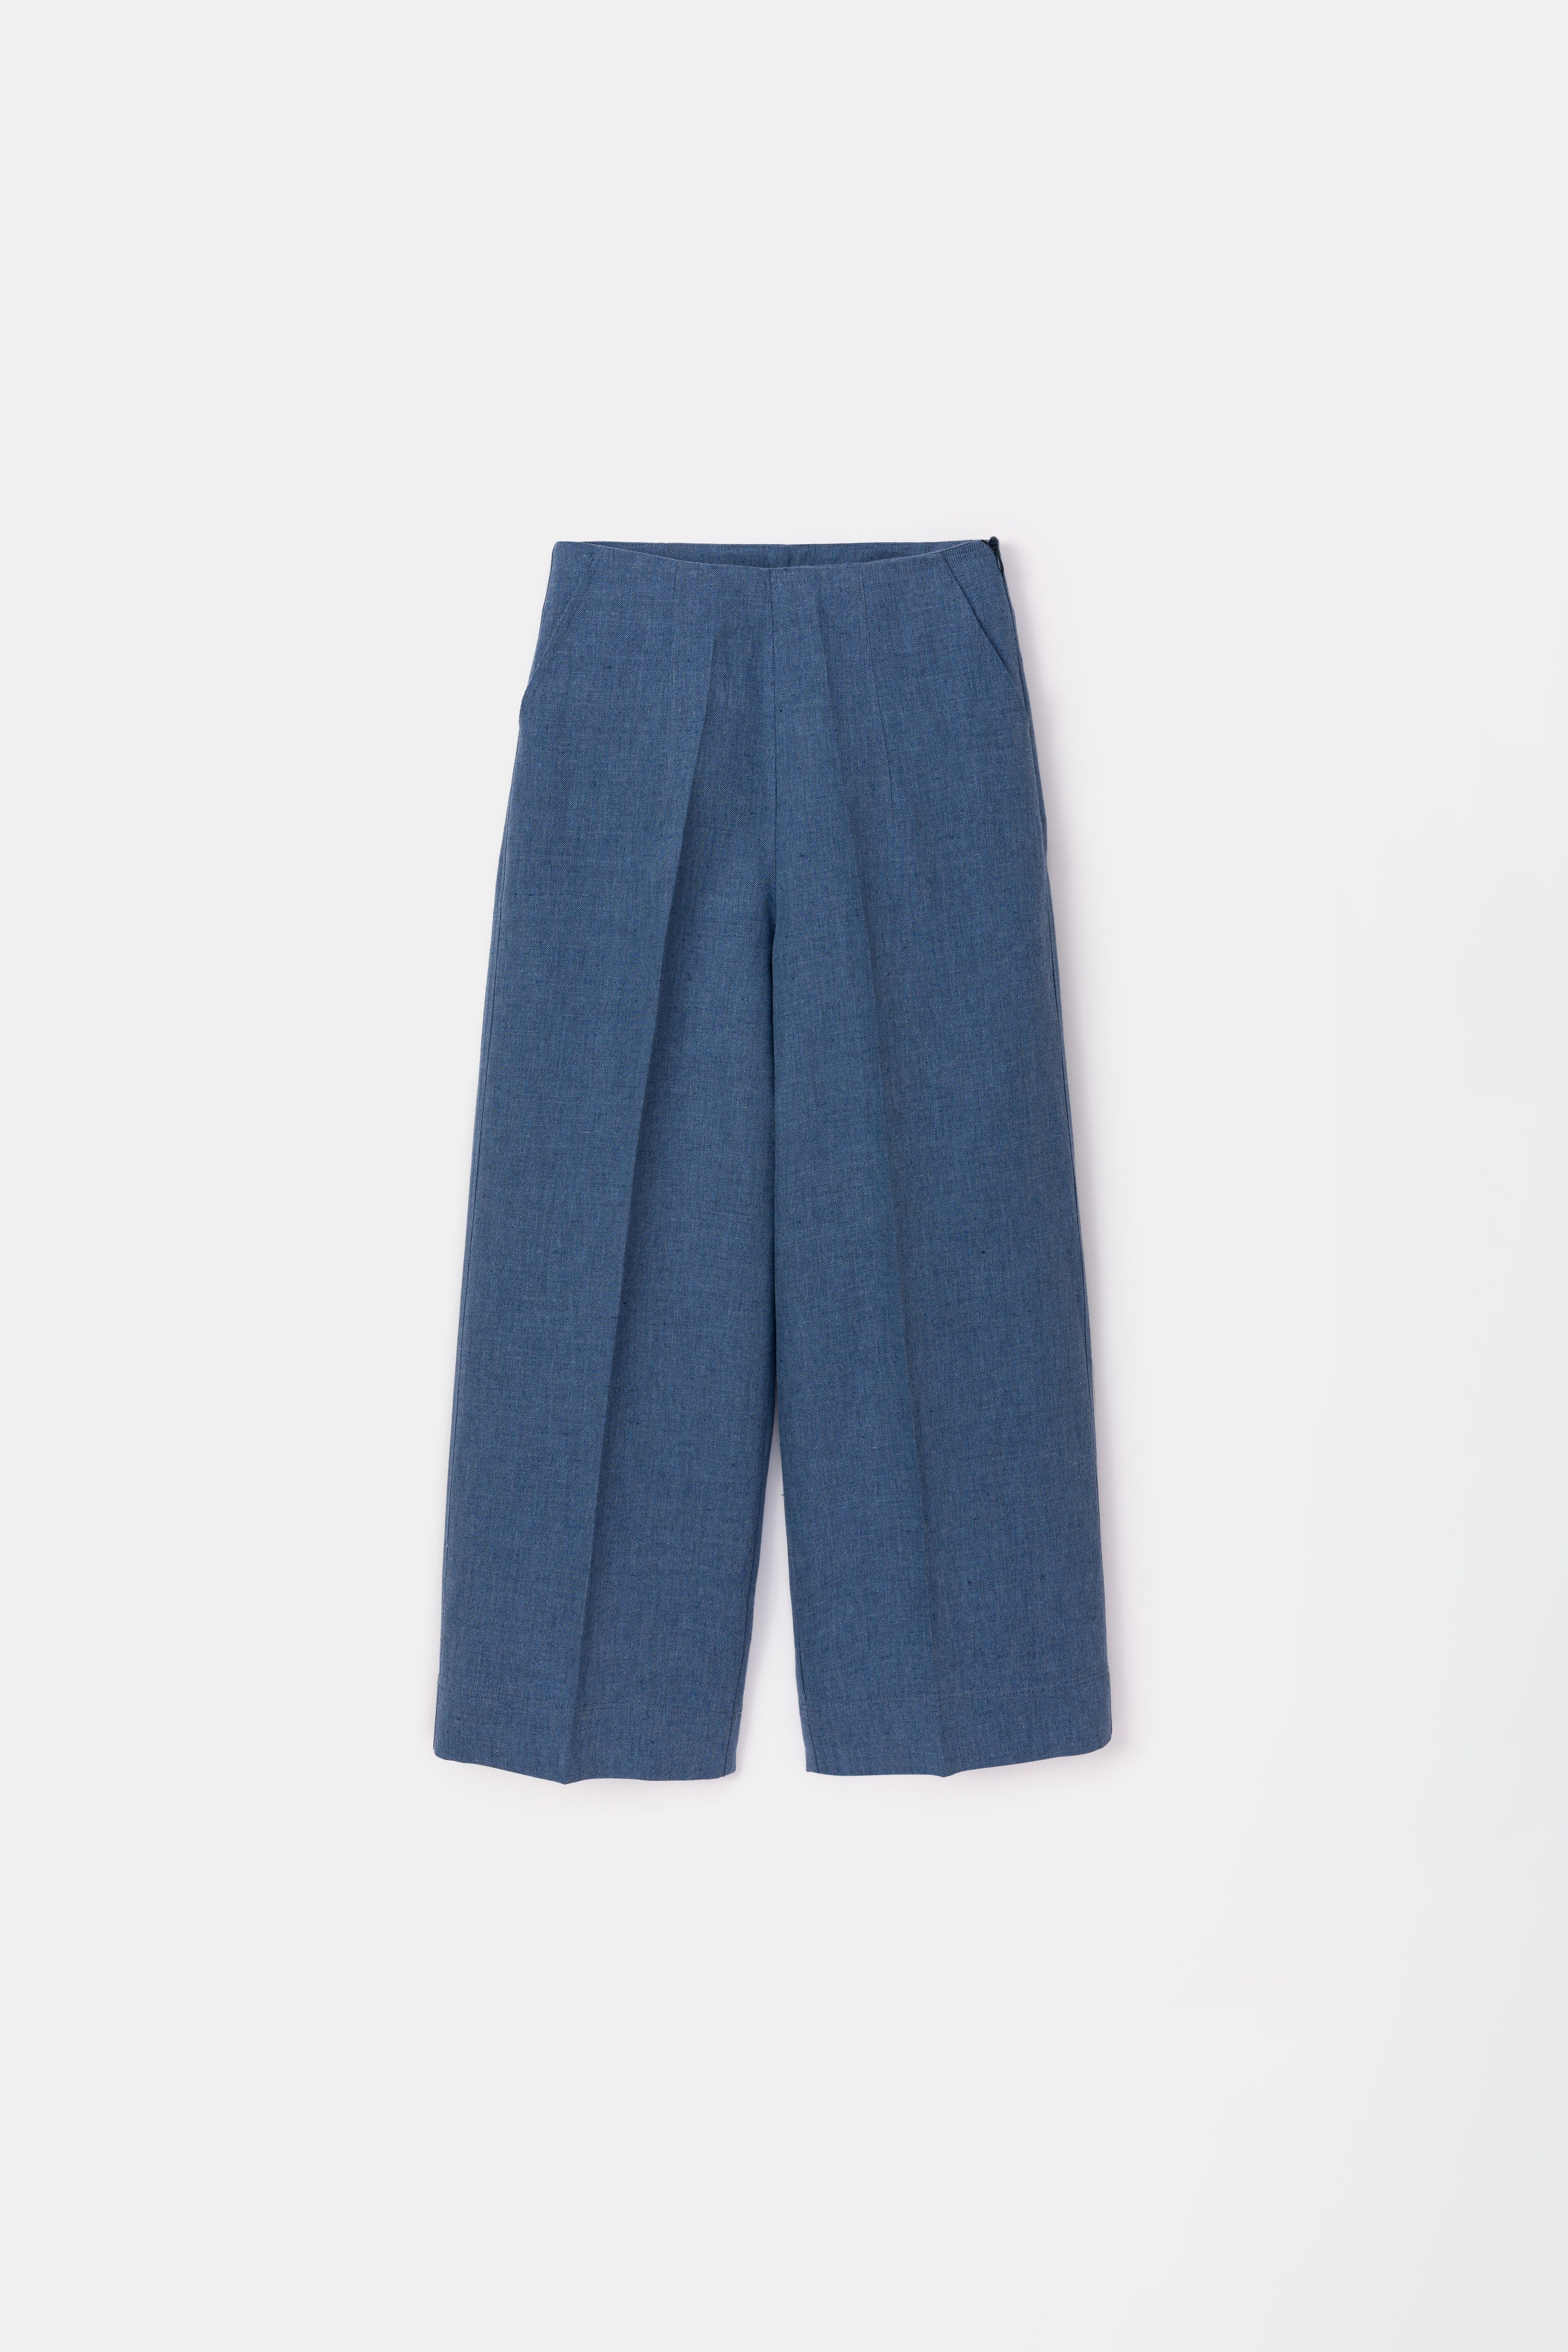 Nomi Trousers in Denim Blue